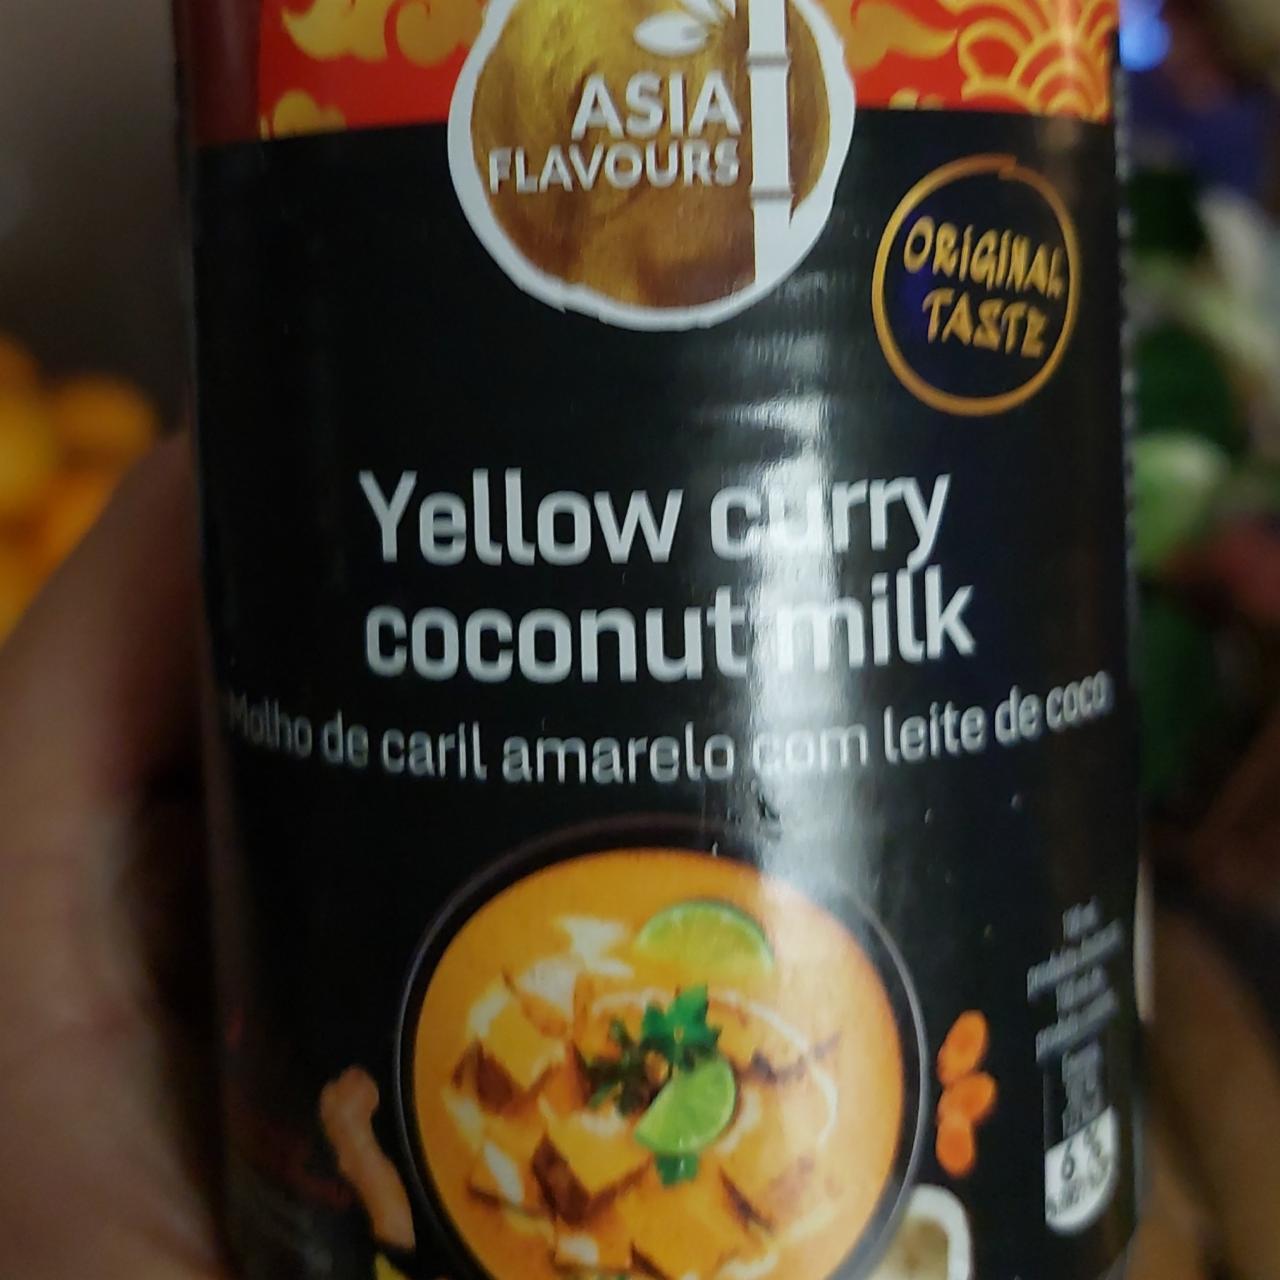 Zdjęcia - Yellow curry coconut milk Asia Flavours